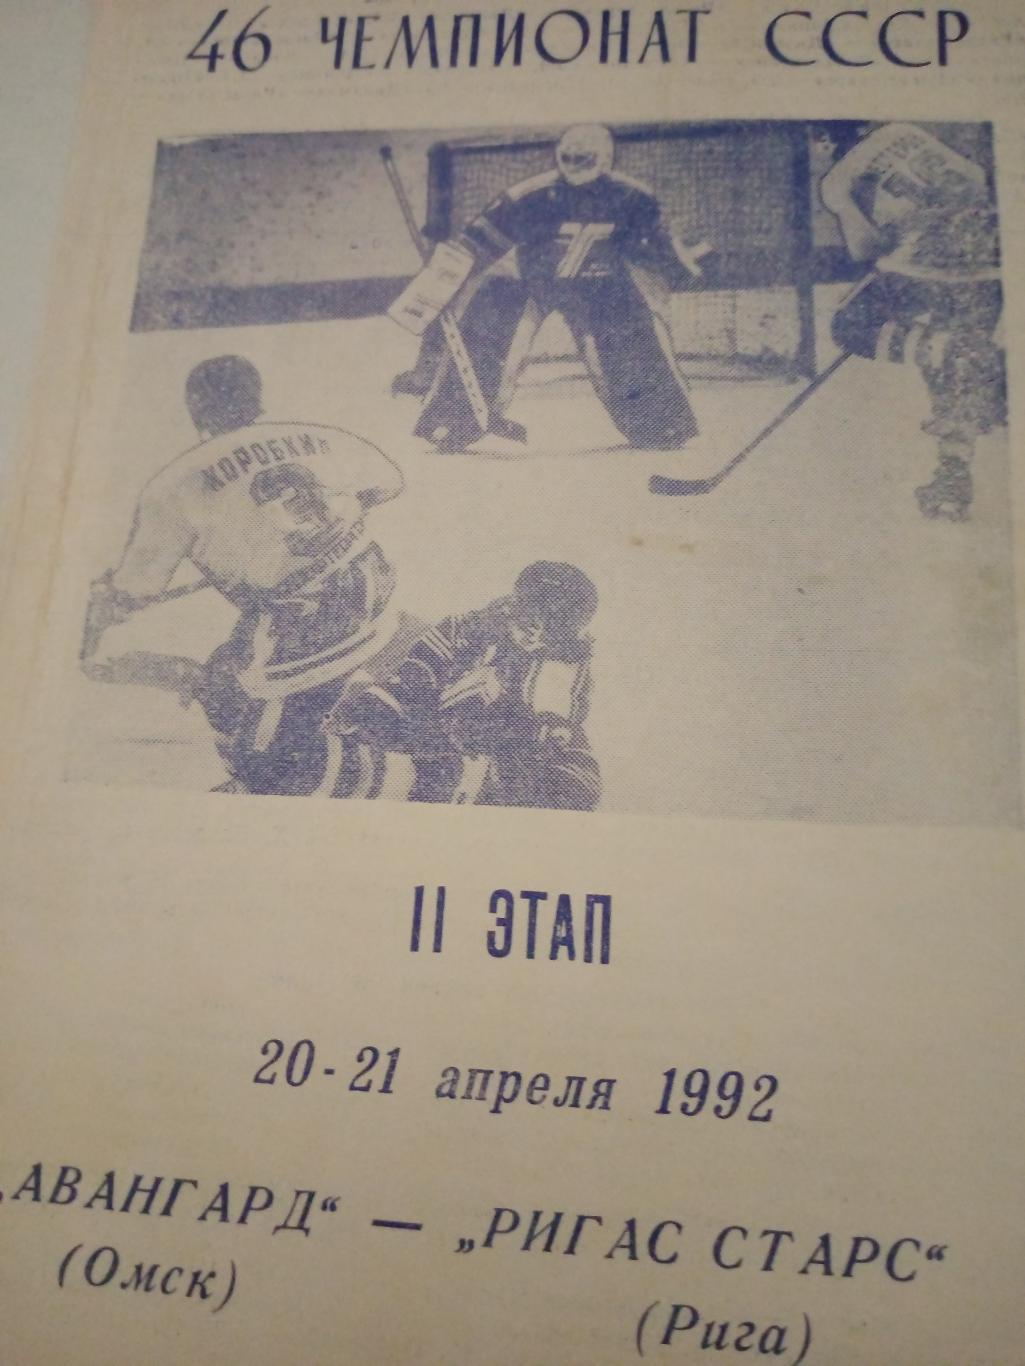 Авангард Омск - Ригас старс Рига. 20 и 21 апреля 1992 год